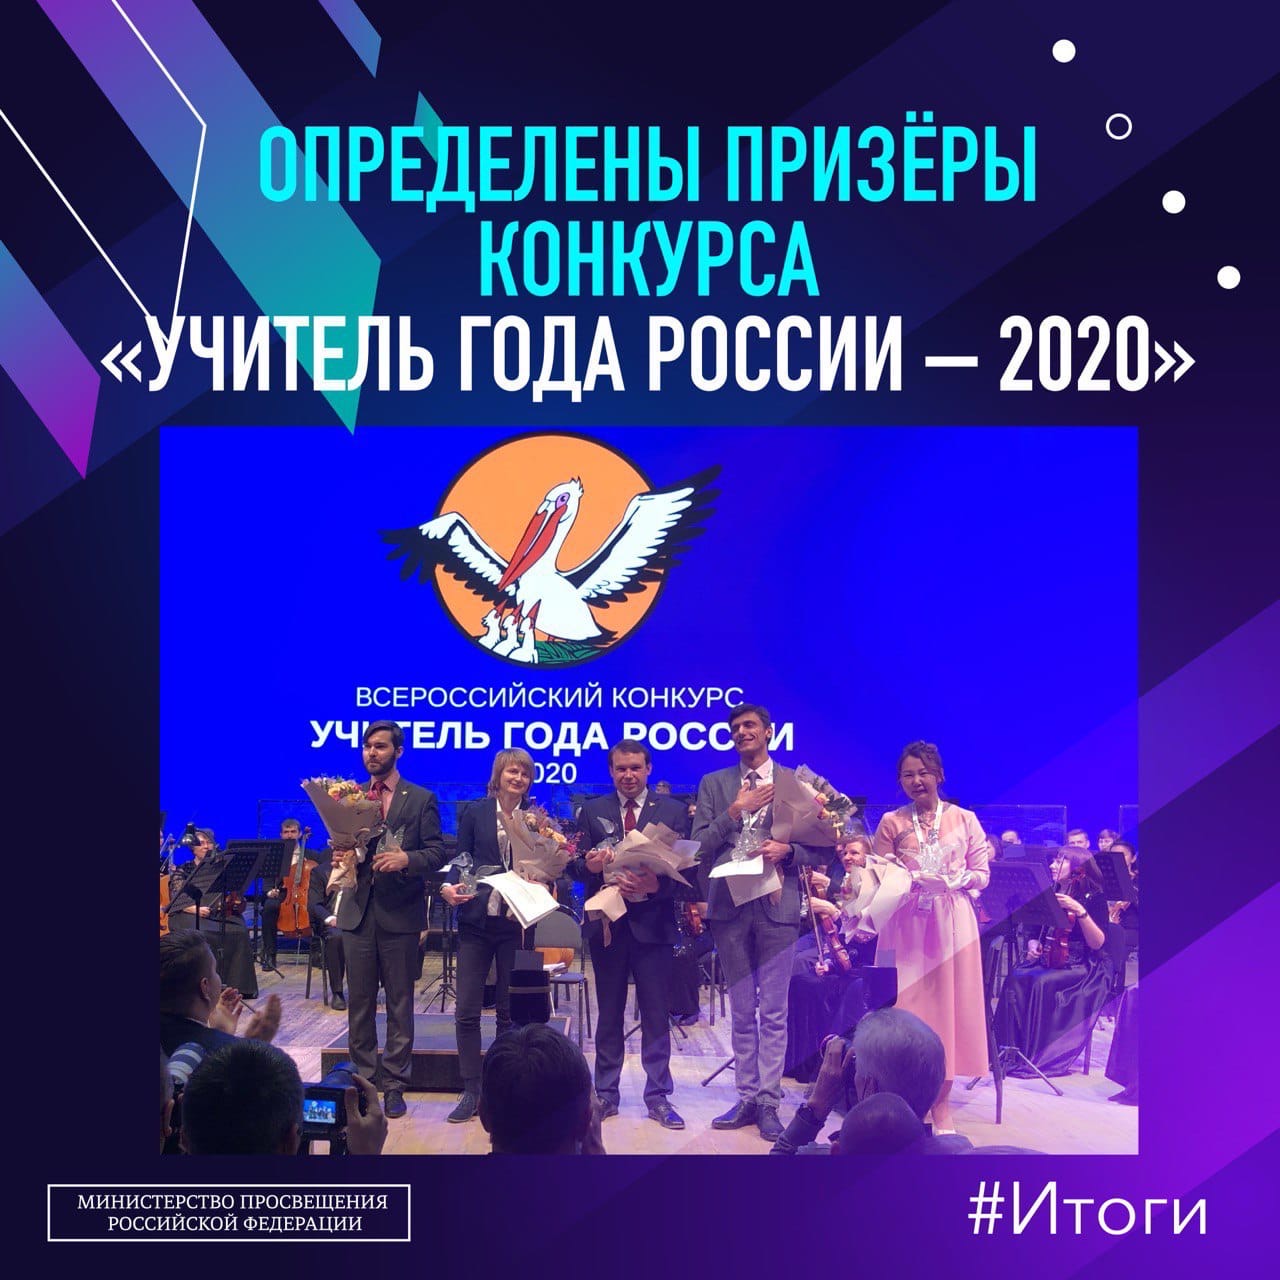 Выпускник АГПУ вошёл в число пяти призёров Всероссийского конкурса «Учитель года России – 2020».